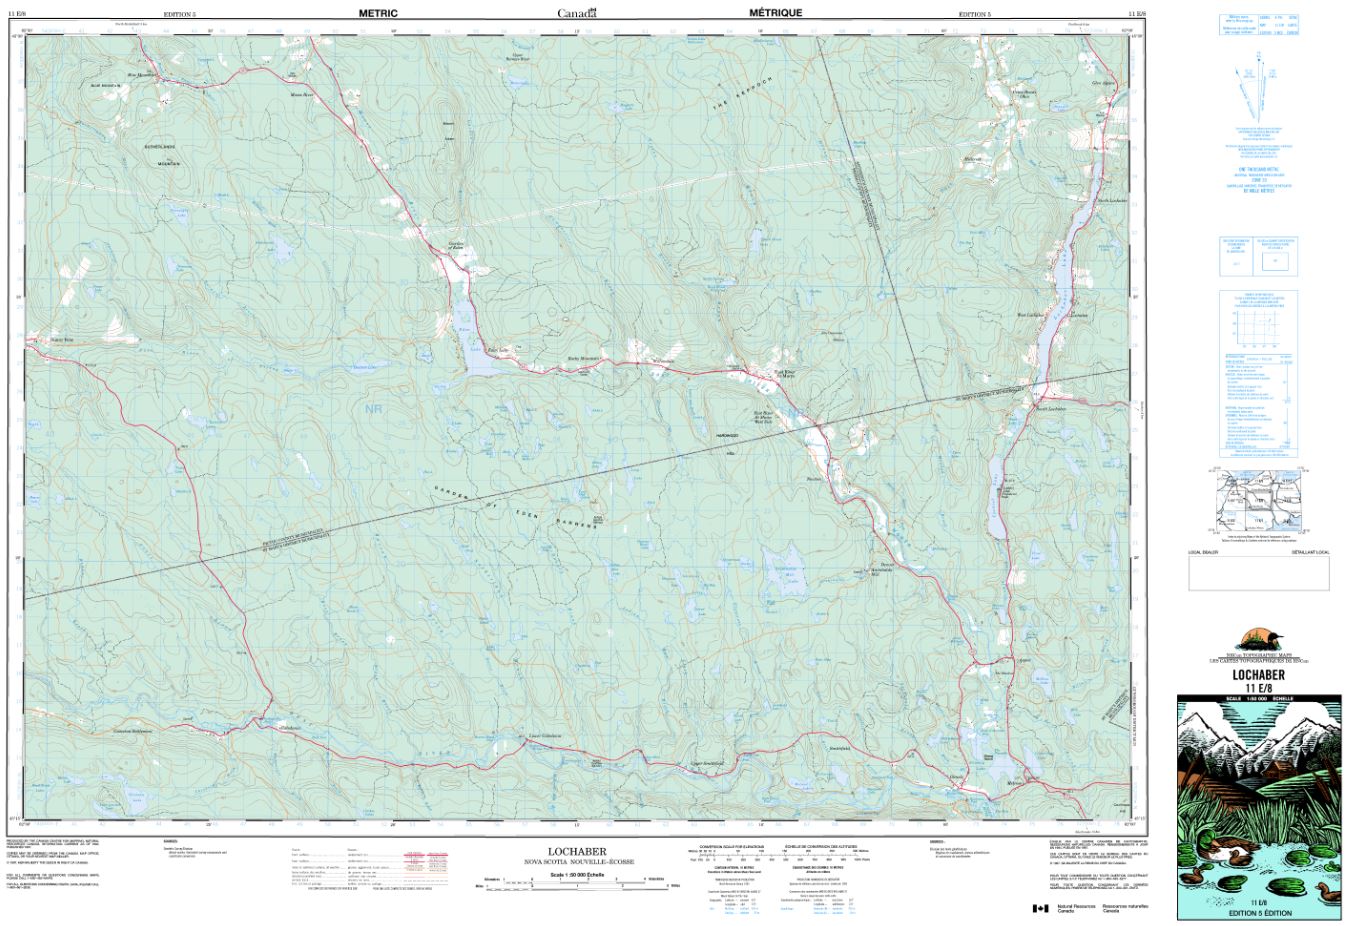 11E/08 Lochaber Topographic Map Nova Scotia